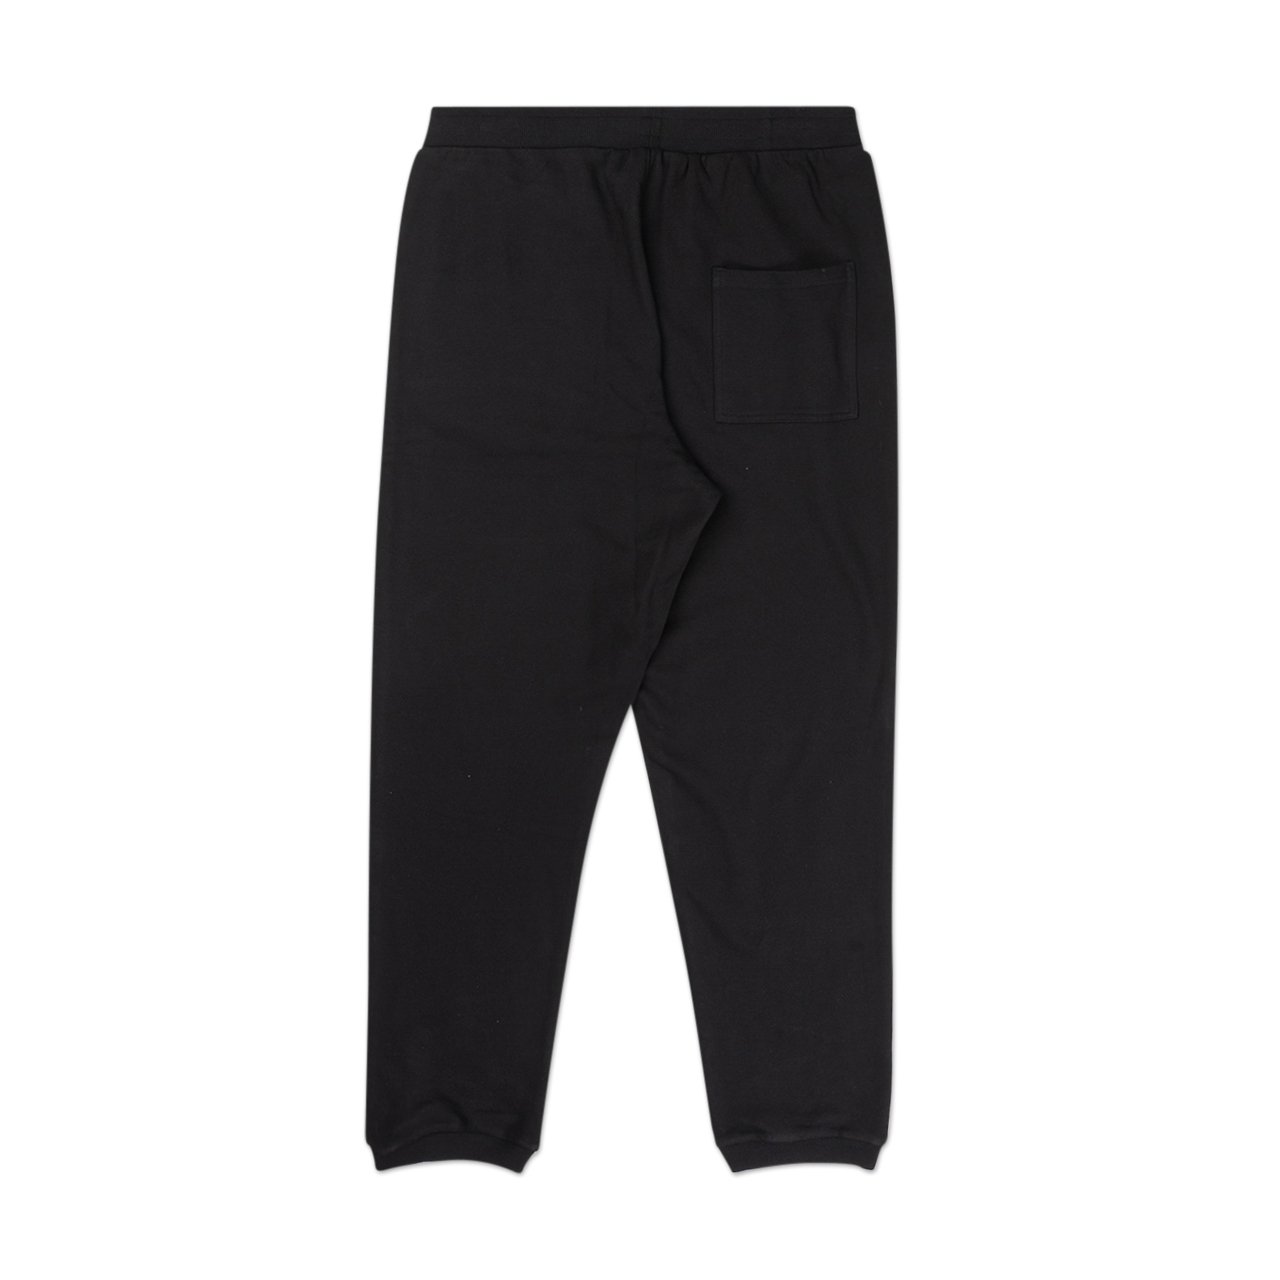 perks and mini b.t.c. jogger sweat pants (black) - 8382-b - a.plus - Image - 2